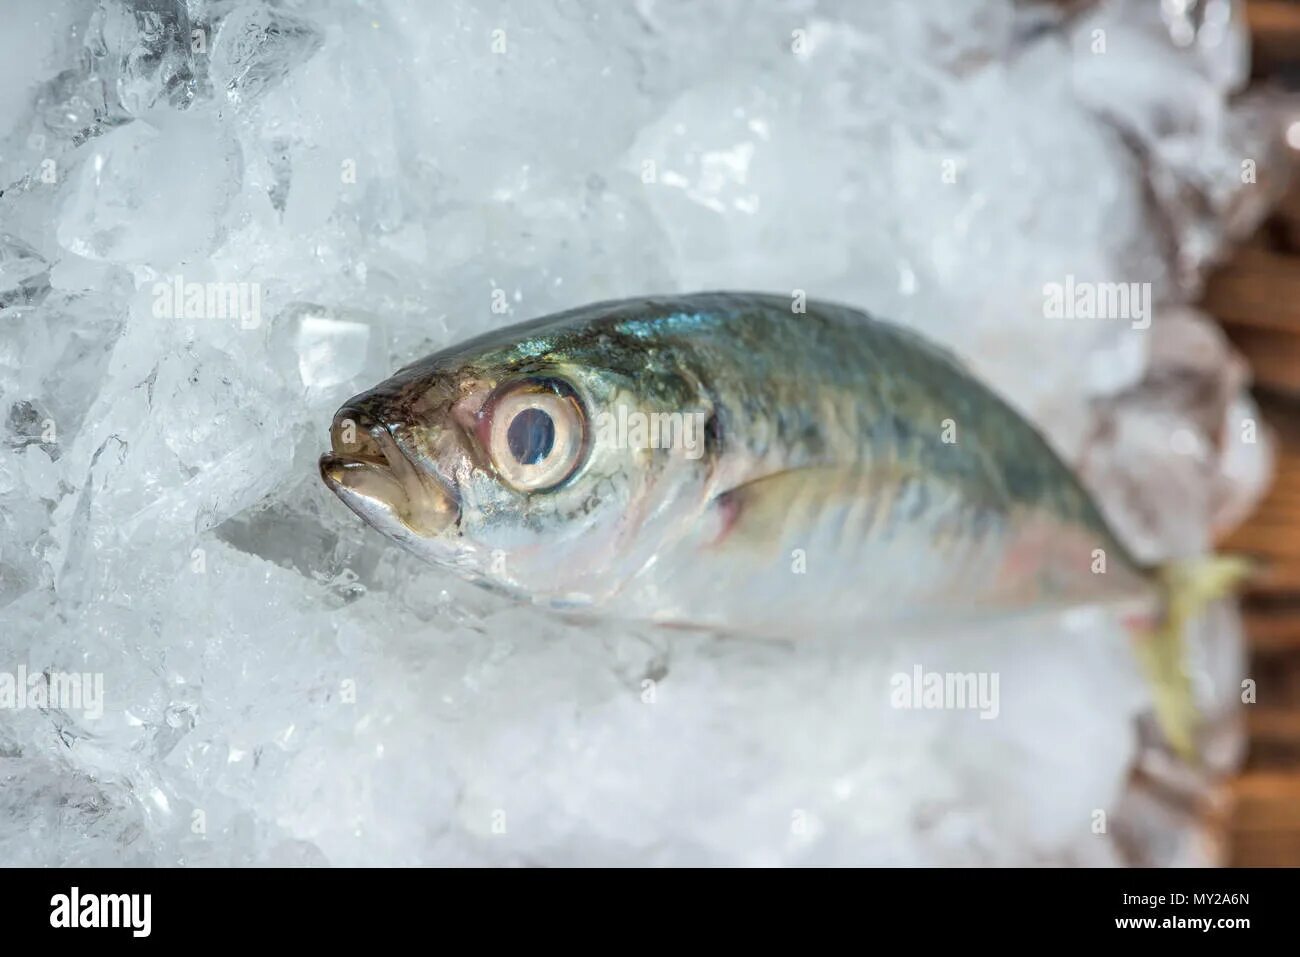 Значение фразеологизма биться как рыба об лед. Рыба на льду. Рыба бьется об лед. Биться как рыба об лед. Молчит как рыба об лед.